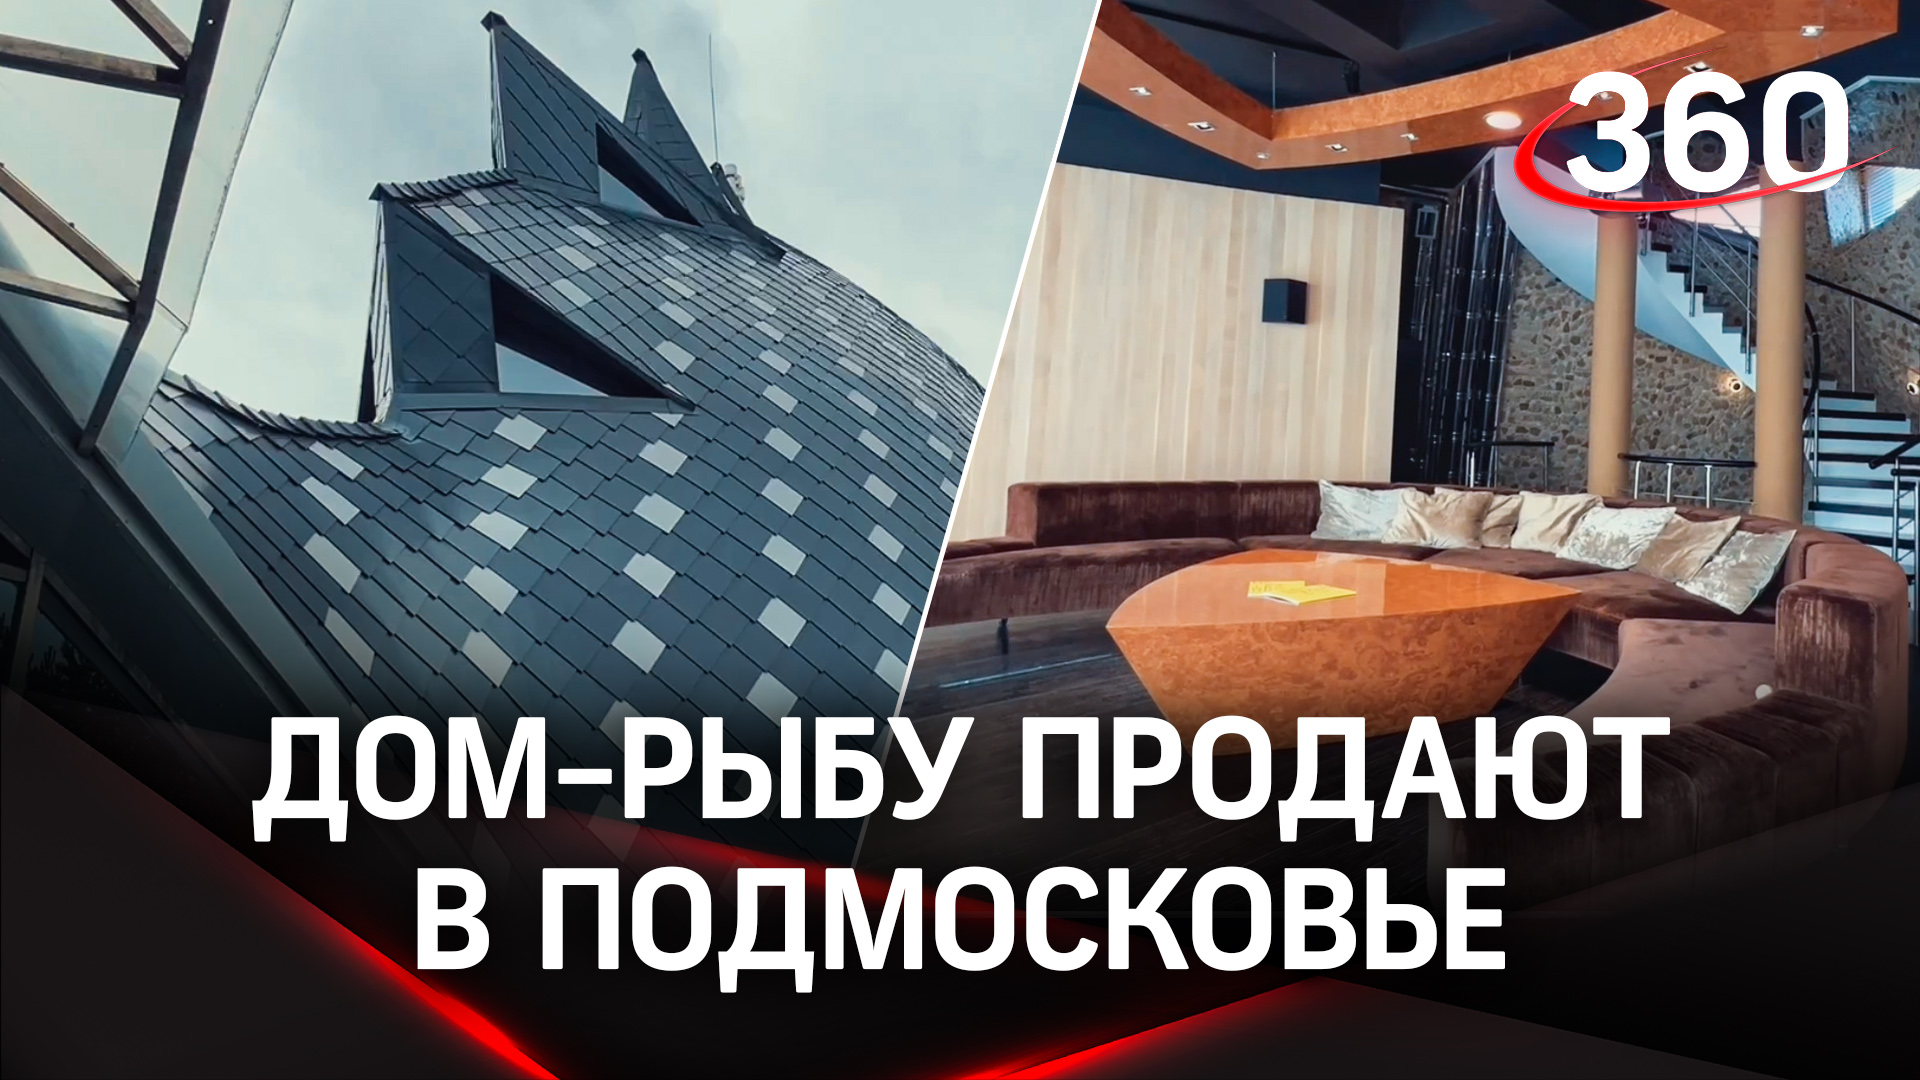 Арт-объект из Подмосковья. Дом в виде рыбы продается за 131 млн рублей